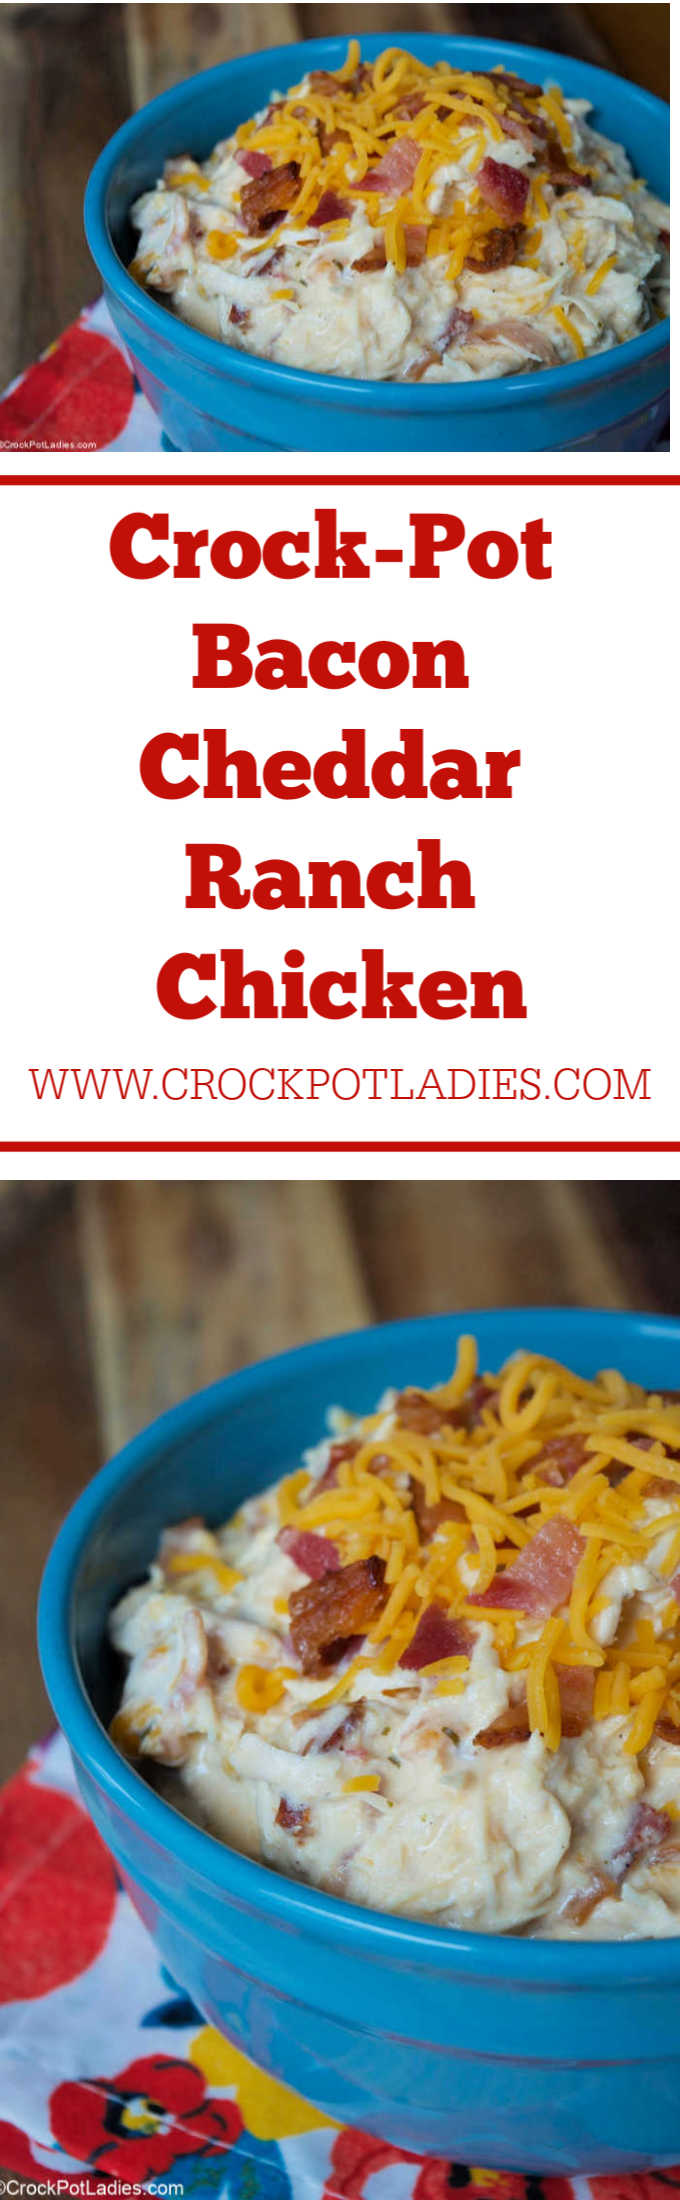 Crock-Pot Bacon Cheddar Ranch Chicken